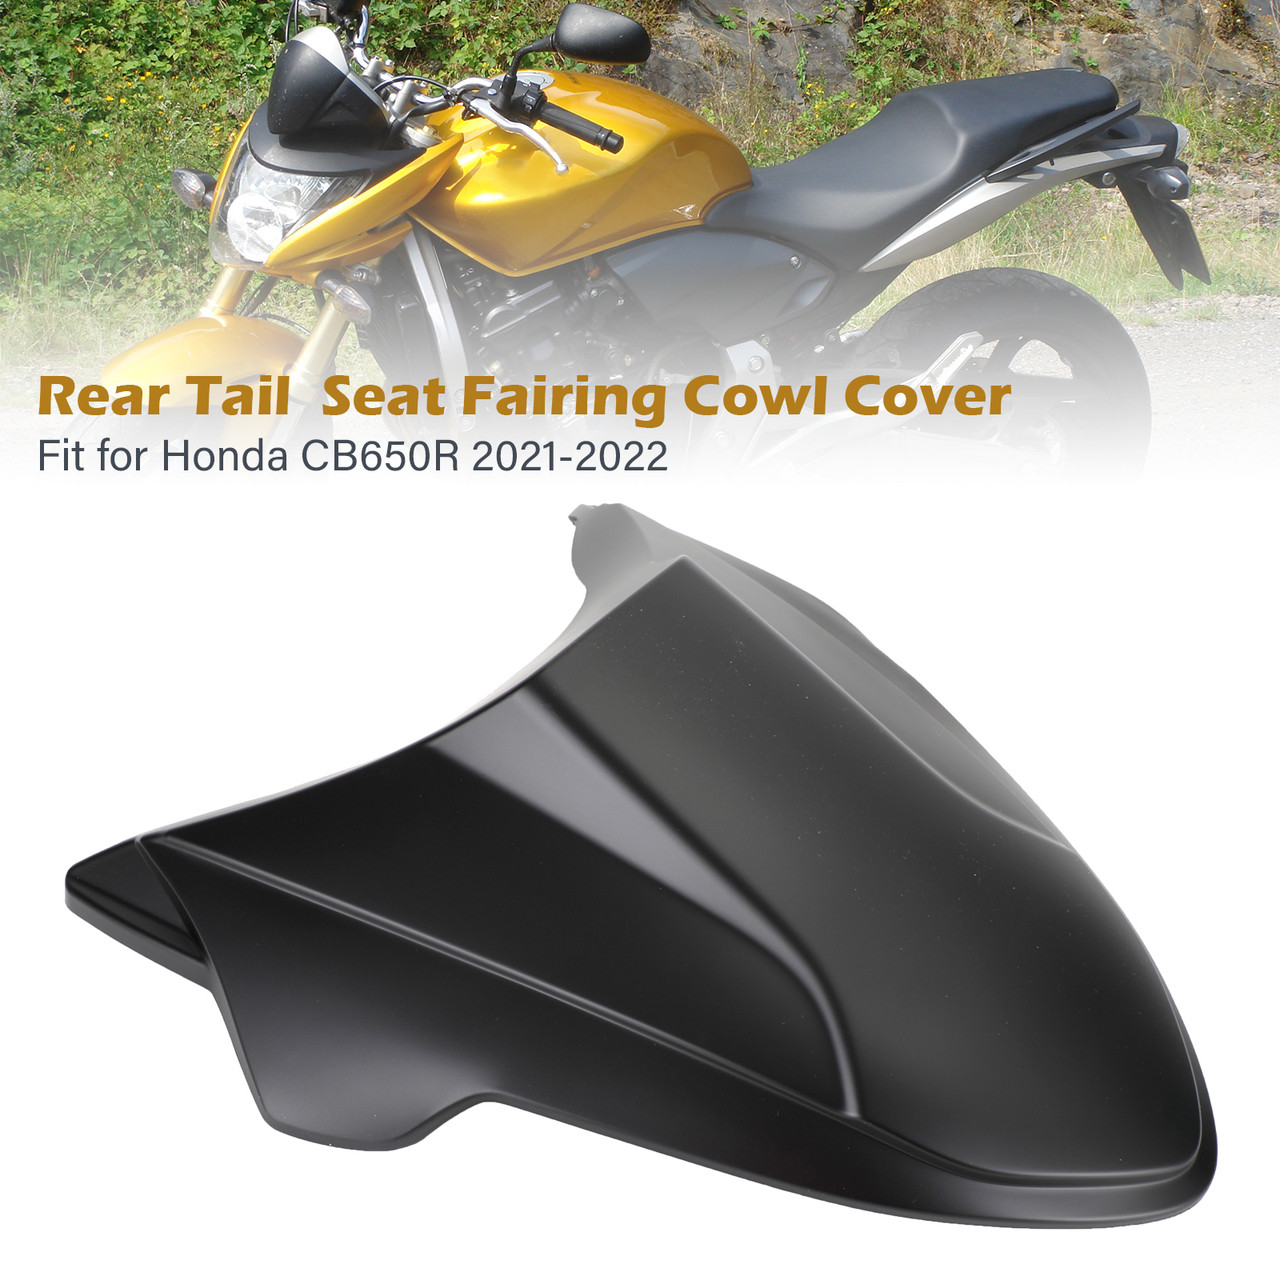 Rear Tail Seat Fairing Cowl Cover for Honda CB650R CBR650R 2021-2022 Matt Black